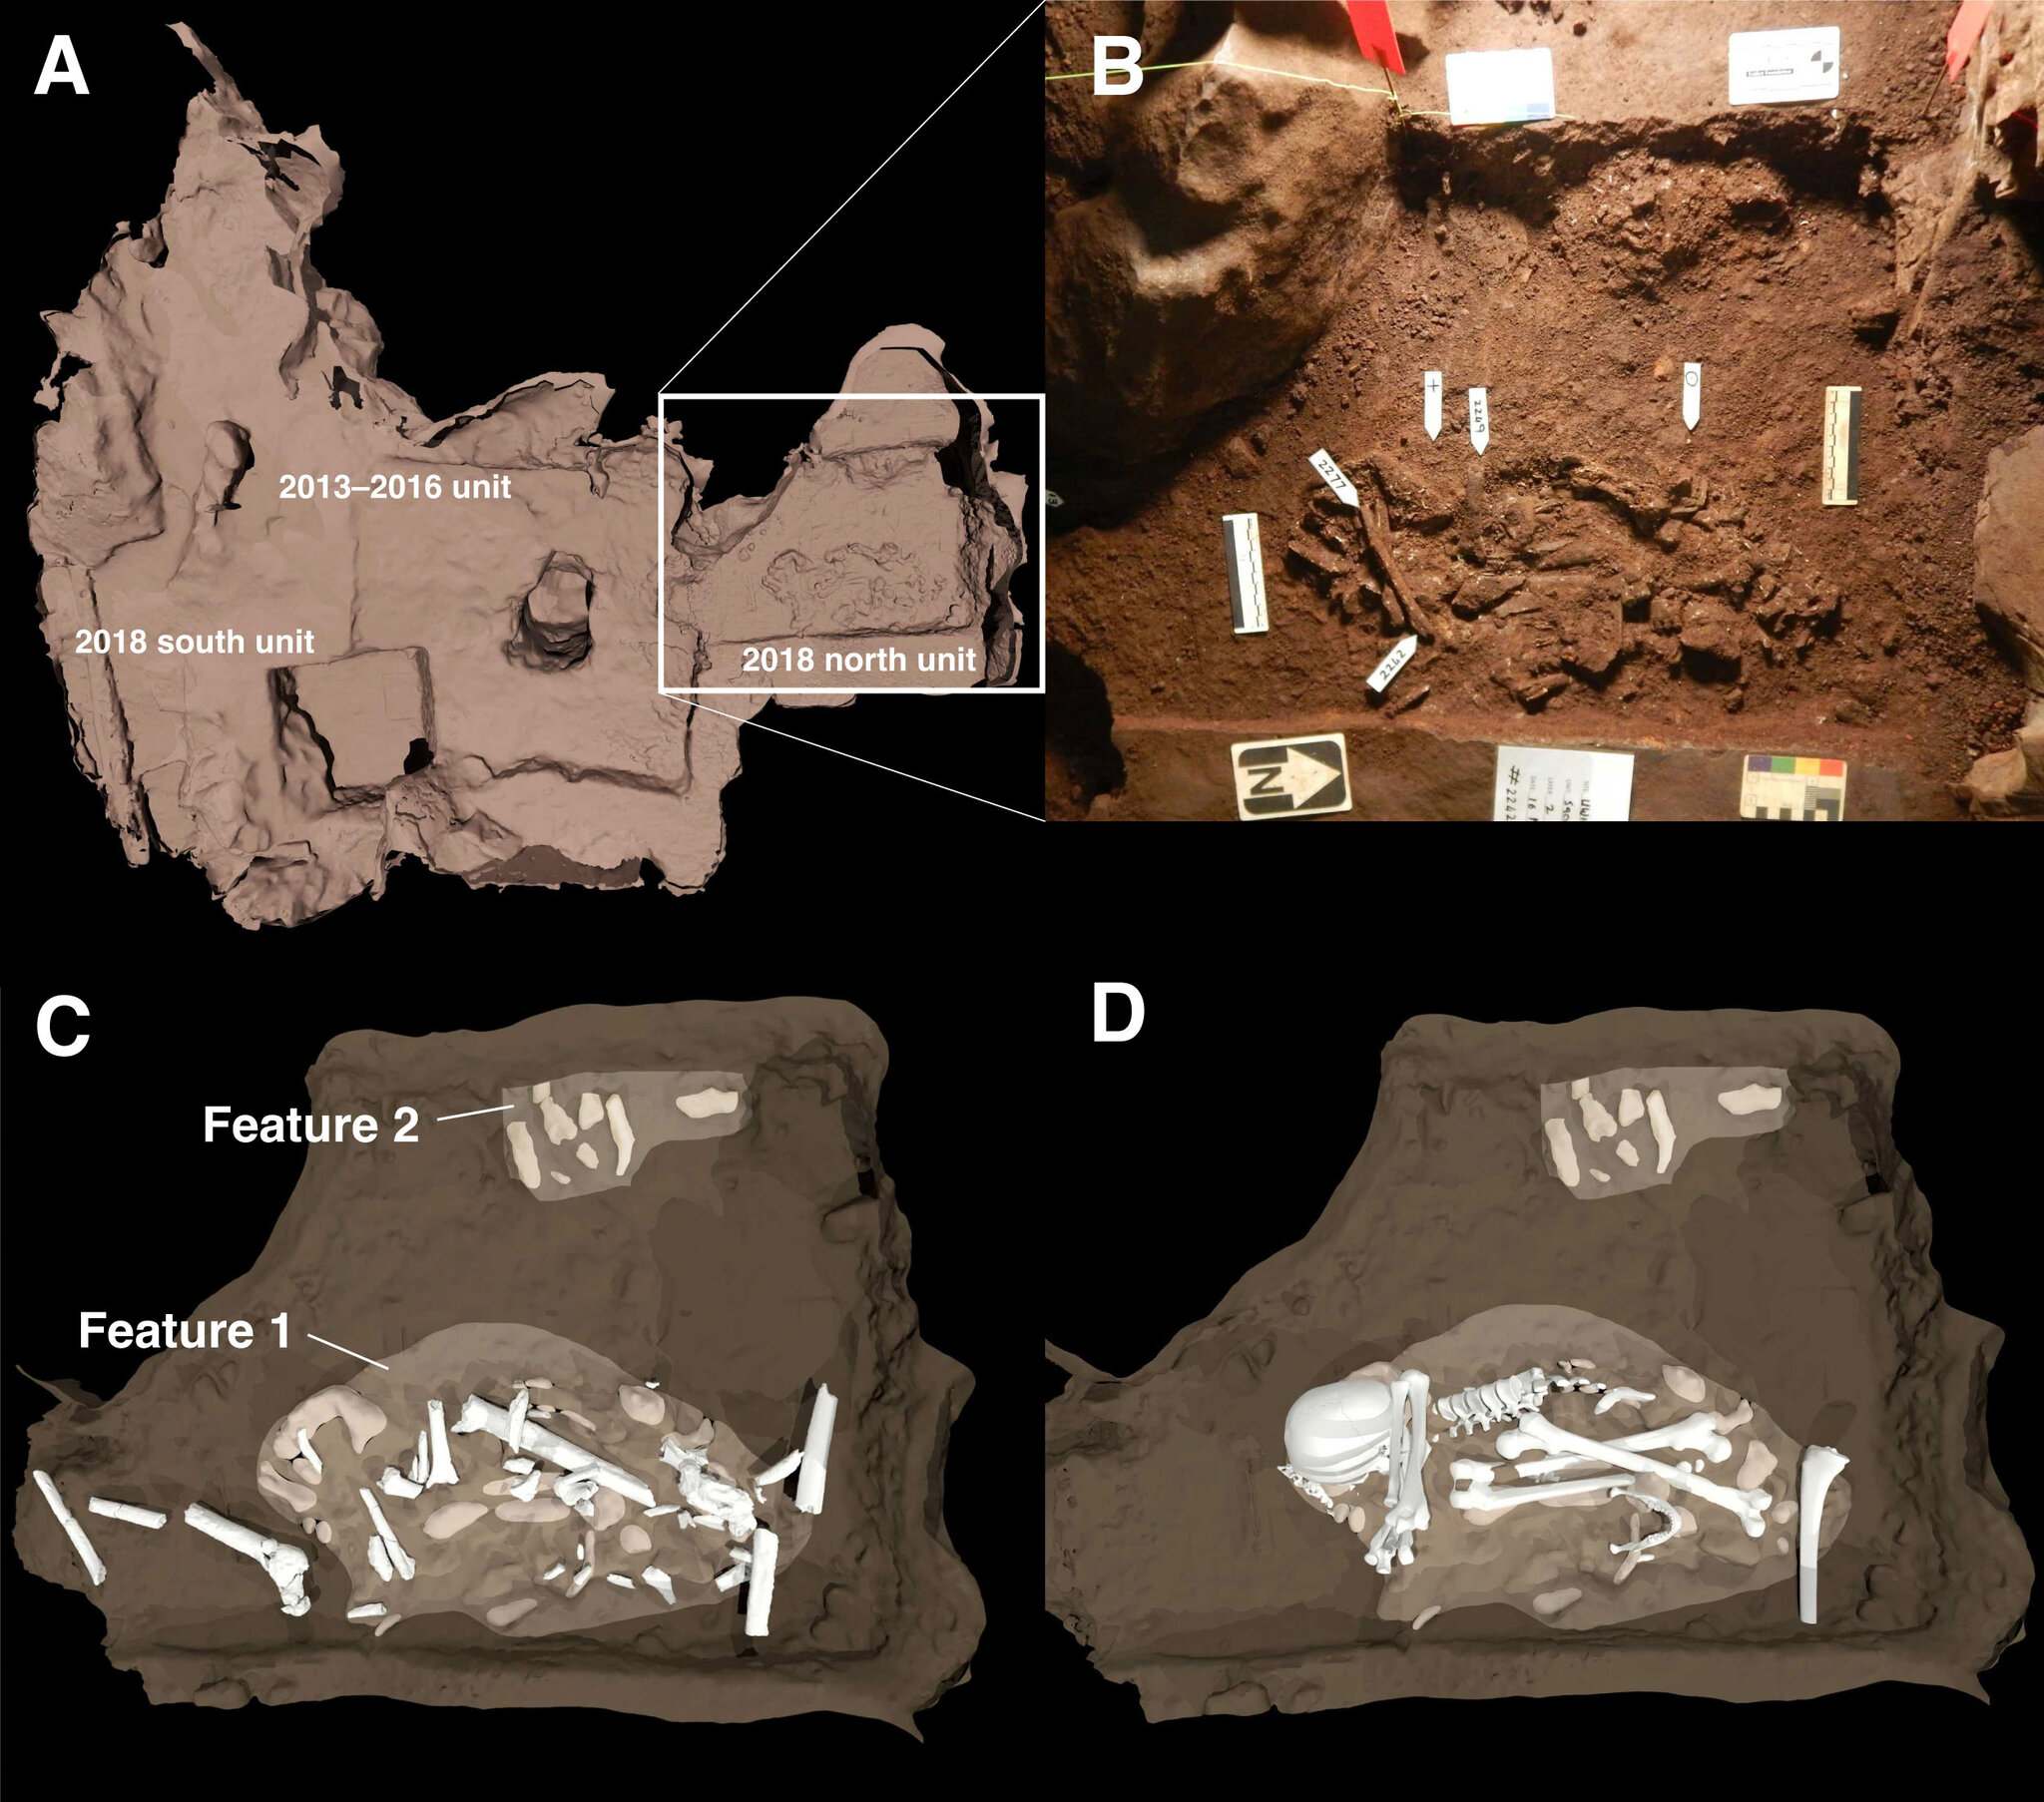 Un esquema de las dos características del entierro que se descubrieron en la Cámara Dinaledi de la Cueva de la Estrella Naciente. (A) La posición de los entierros en relación con las excavaciones de 2013 a 2016 está delineada por área cuadrada. (B) Esta es una fotografía de las principales características del entierro. El rasgo 1 es el cuerpo de un espécimen adulto de Homo naledi. La característica 2 muestra al menos un cuerpo juvenil en el borde del sitio de entierro. (C) y (D) son ilustraciones que muestran cómo se colocaron los huesos dentro de las tumbas.